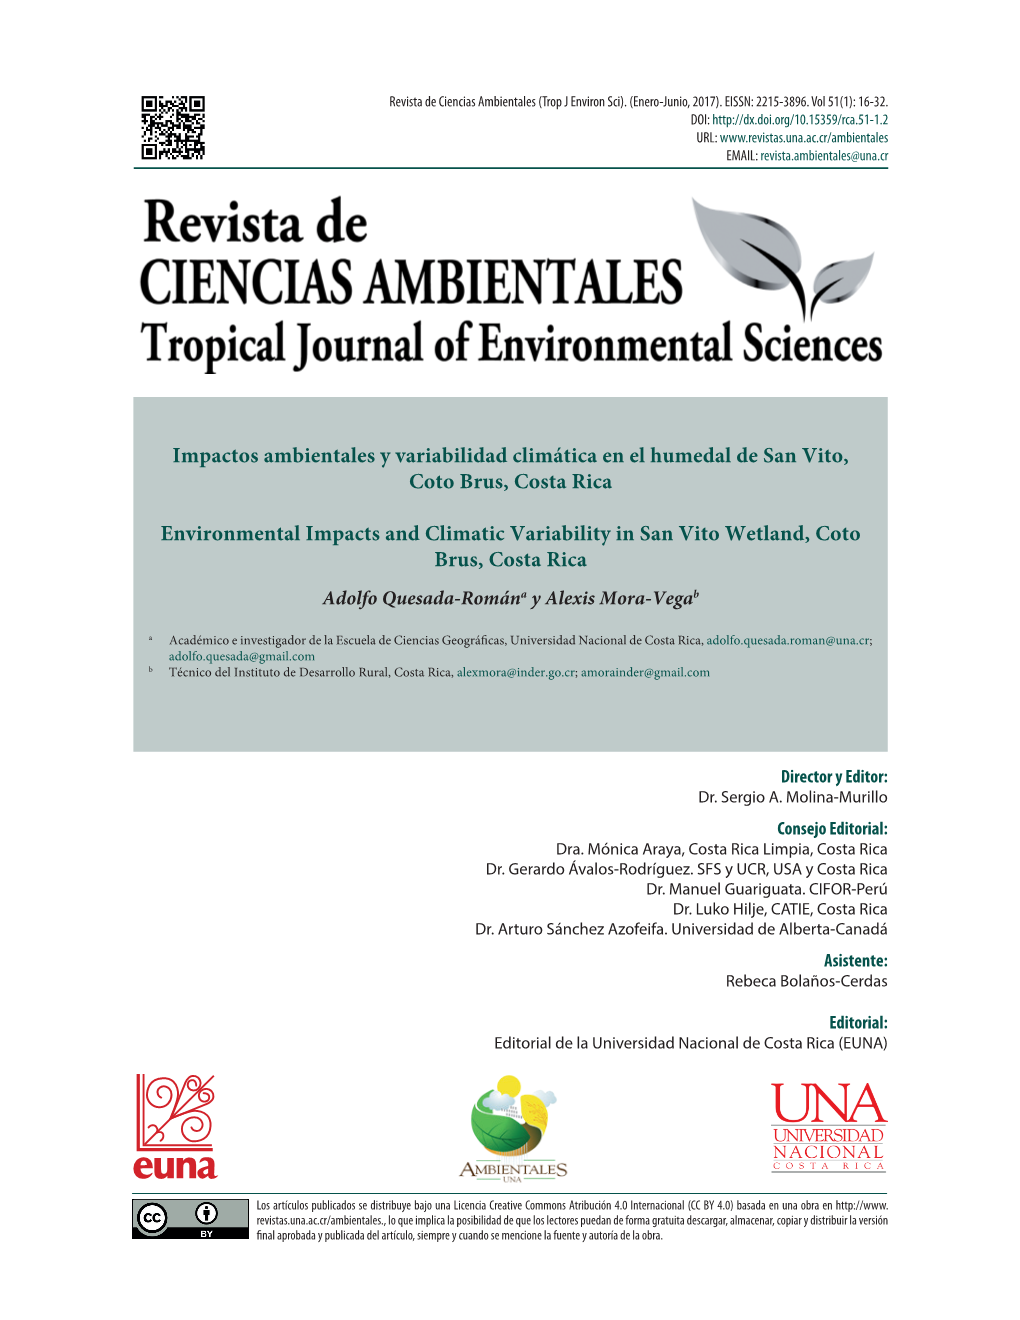 Impactos Ambientales Y Variabilidad Climática En El Humedal De San Vito, Coto Brus, Costa Rica